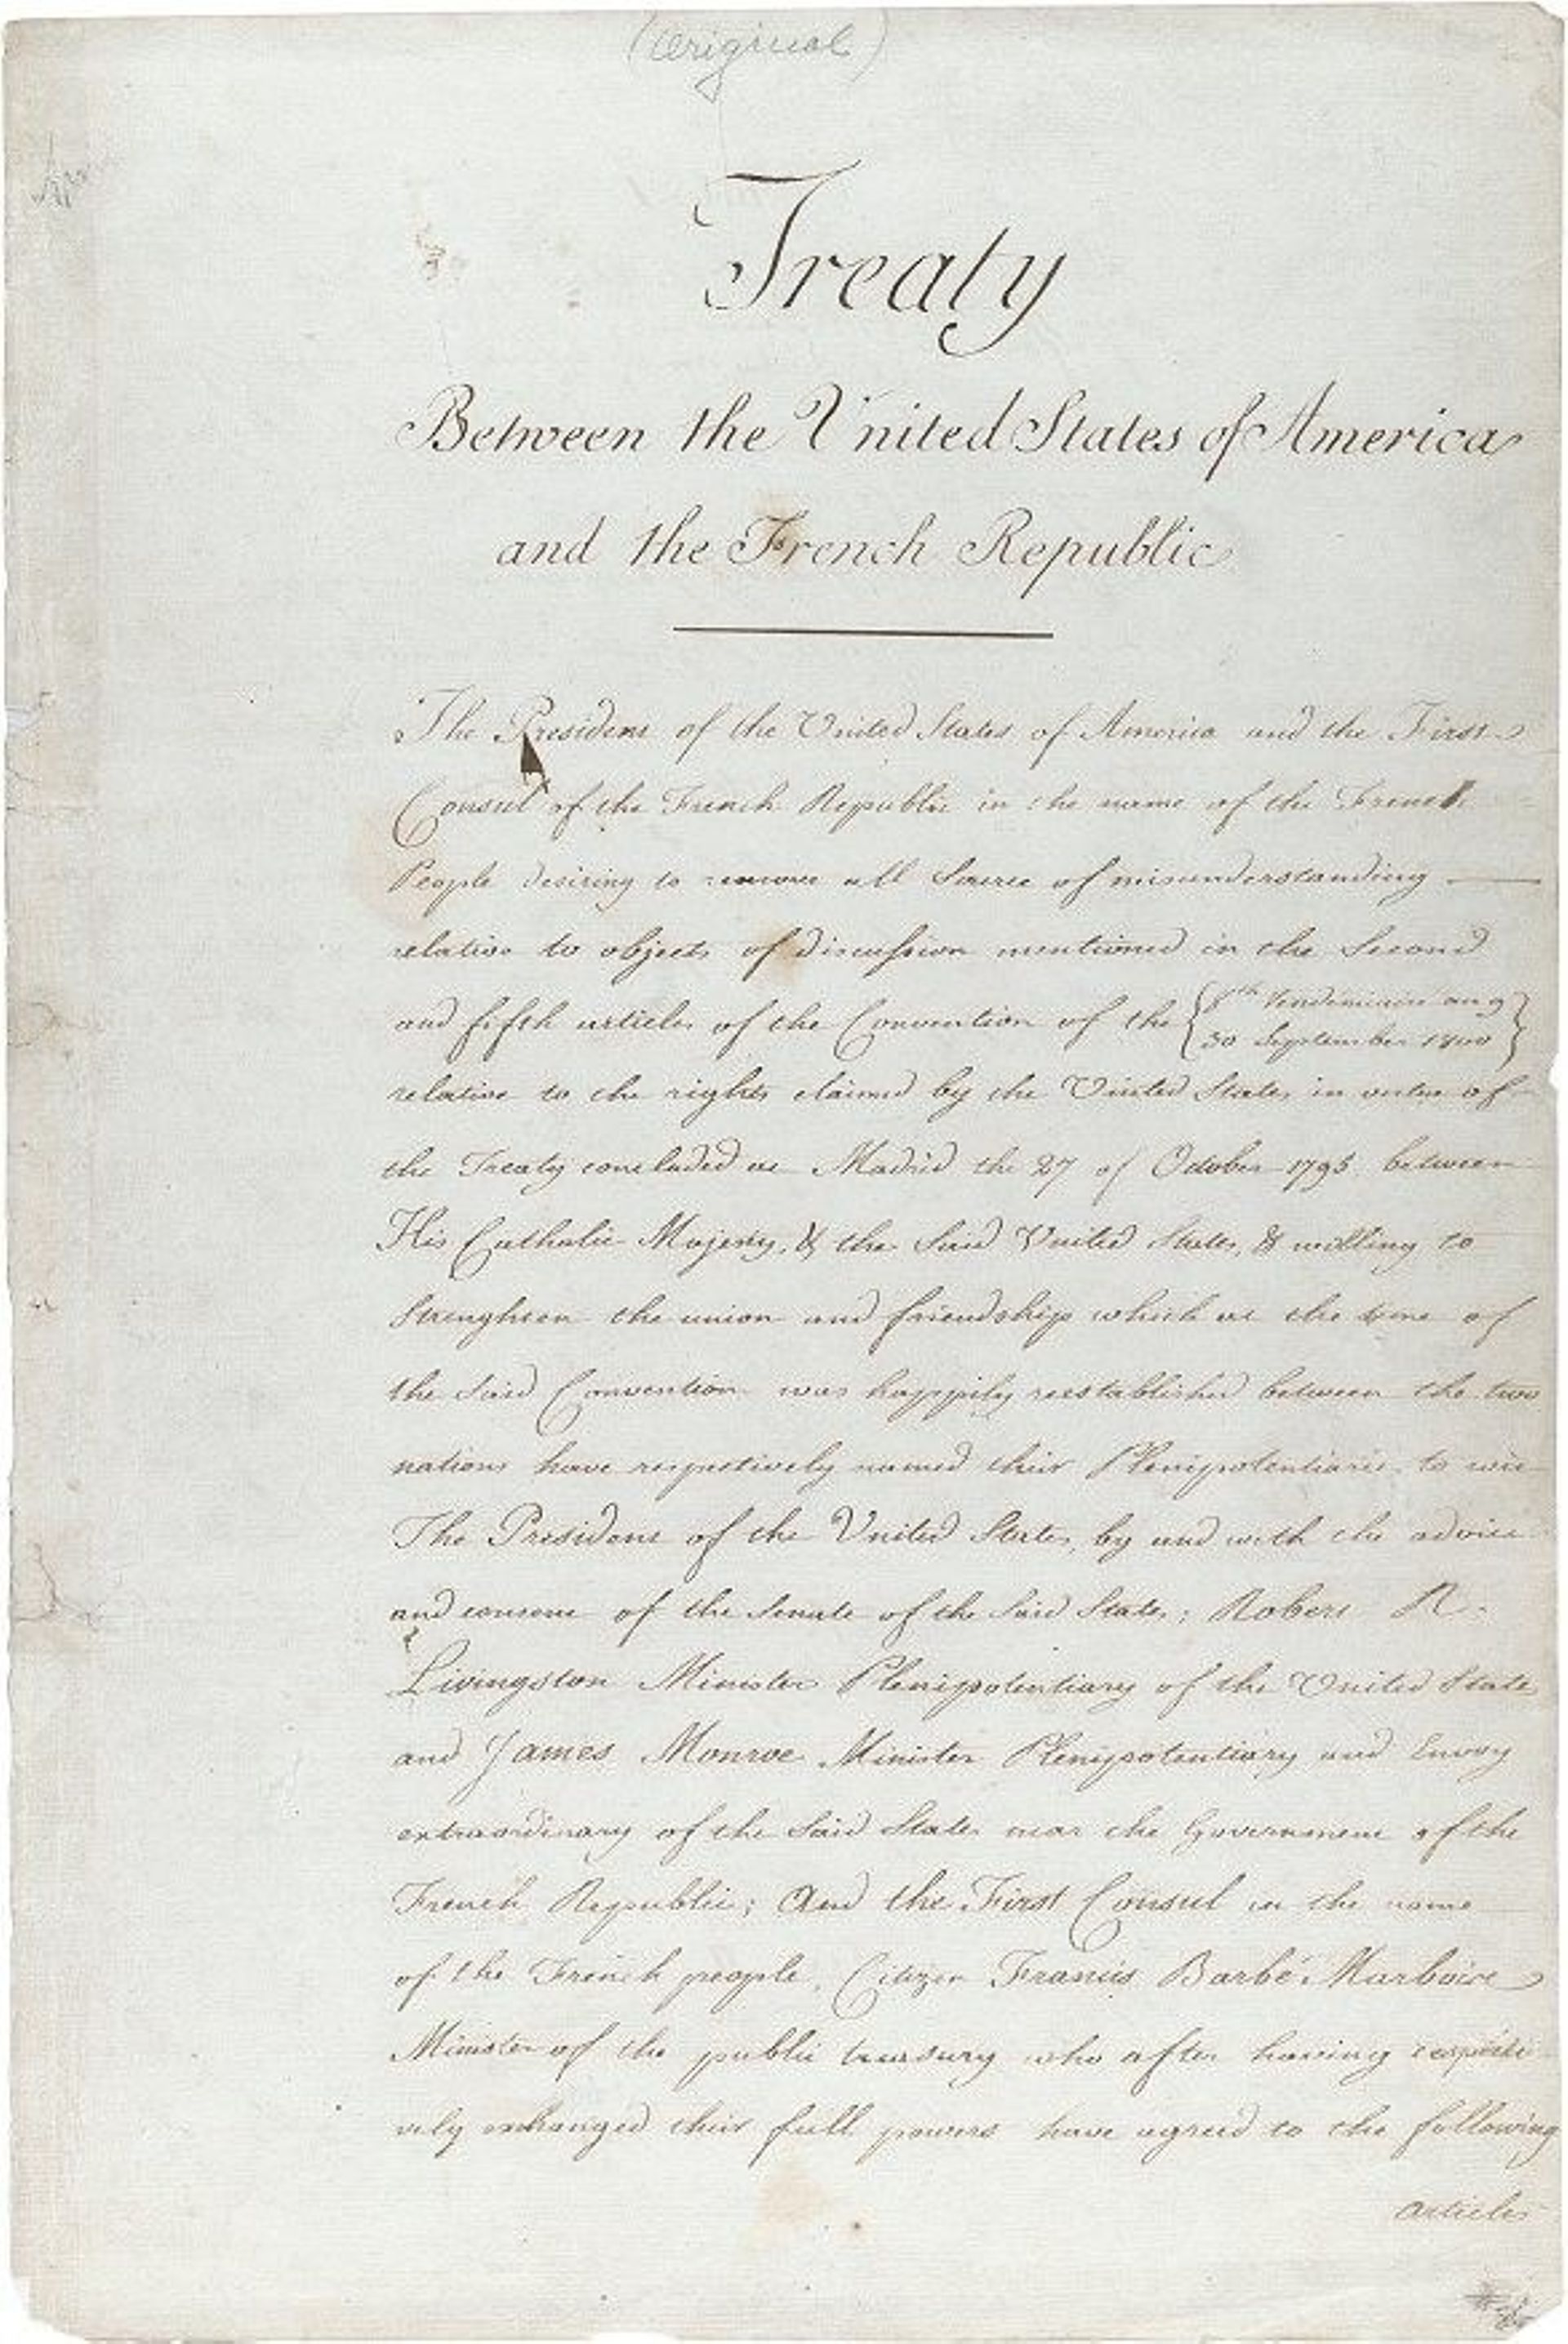 Le traité actant la vente de la Louisiane par la France.